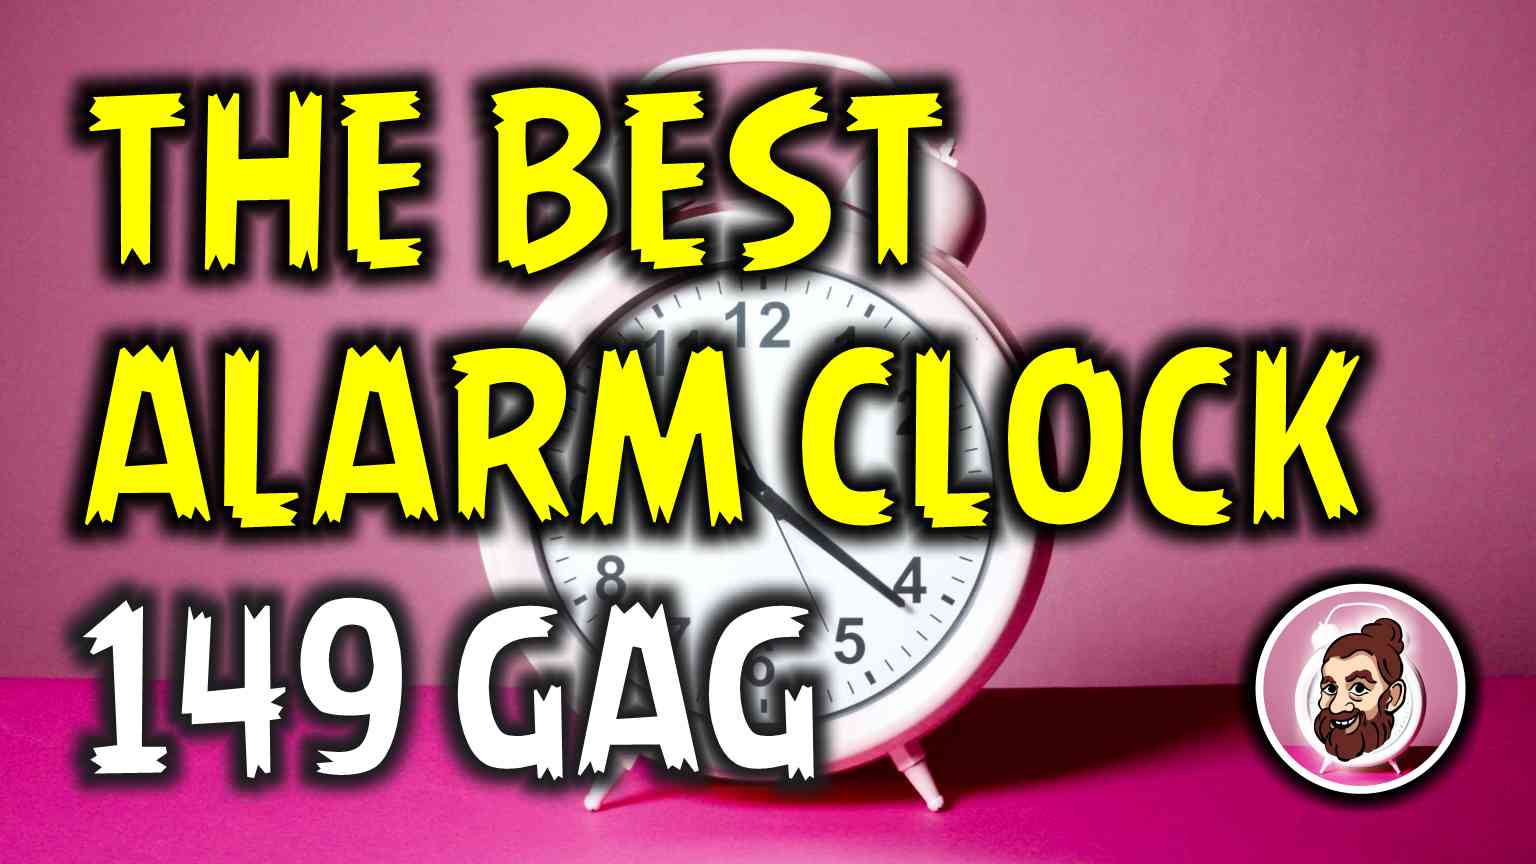 The best alarm clock